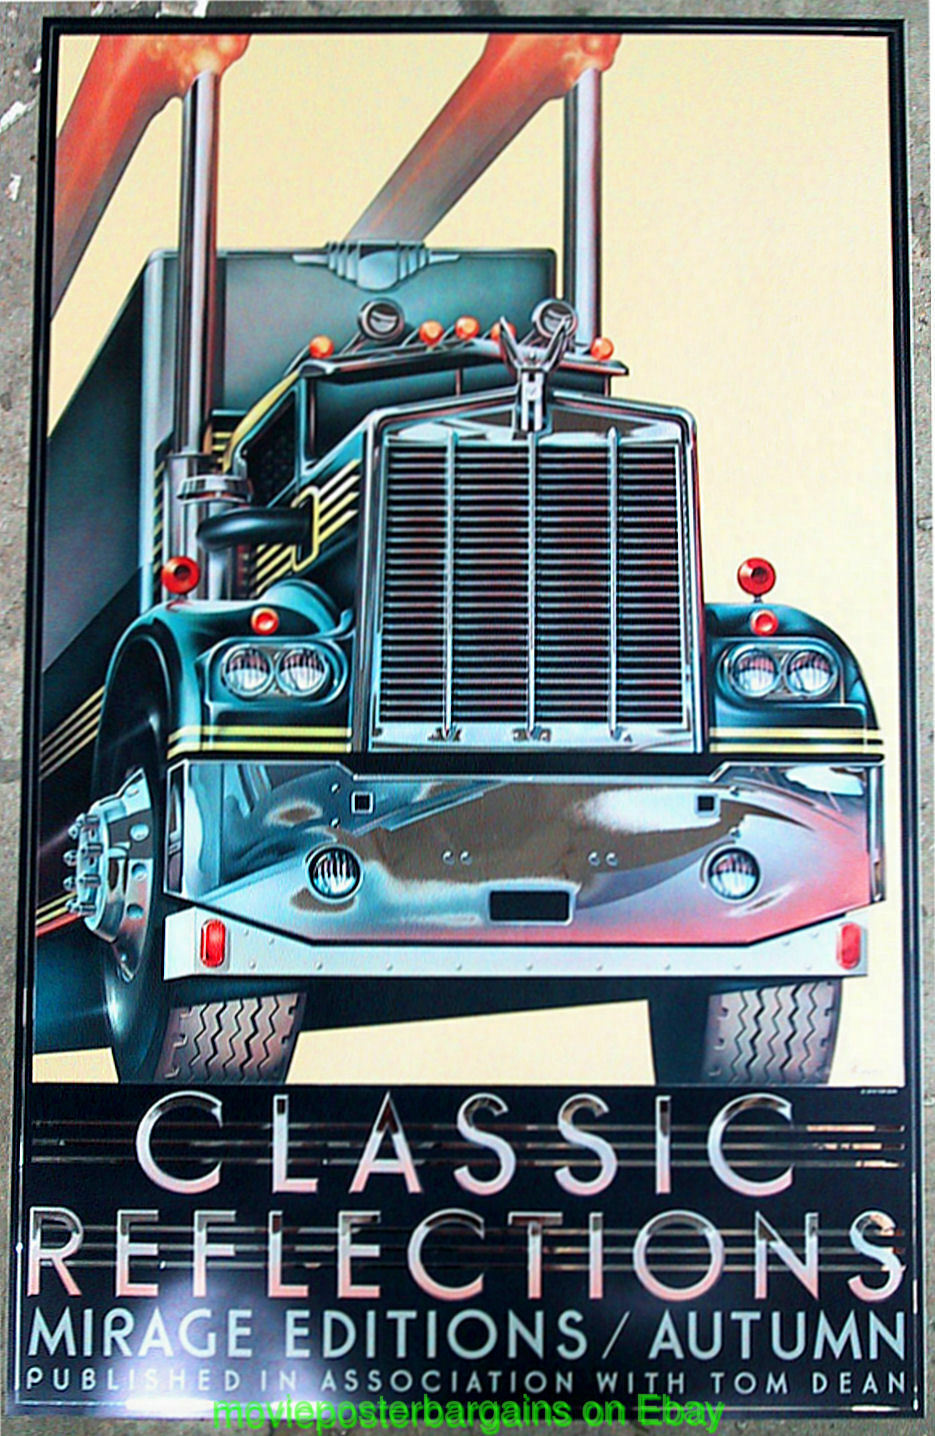 DAVID B. MCMACKEN Art MAC TRUCK / 18 Wheeler Poster CLASSIC REFLECTIONS / AUTUMN